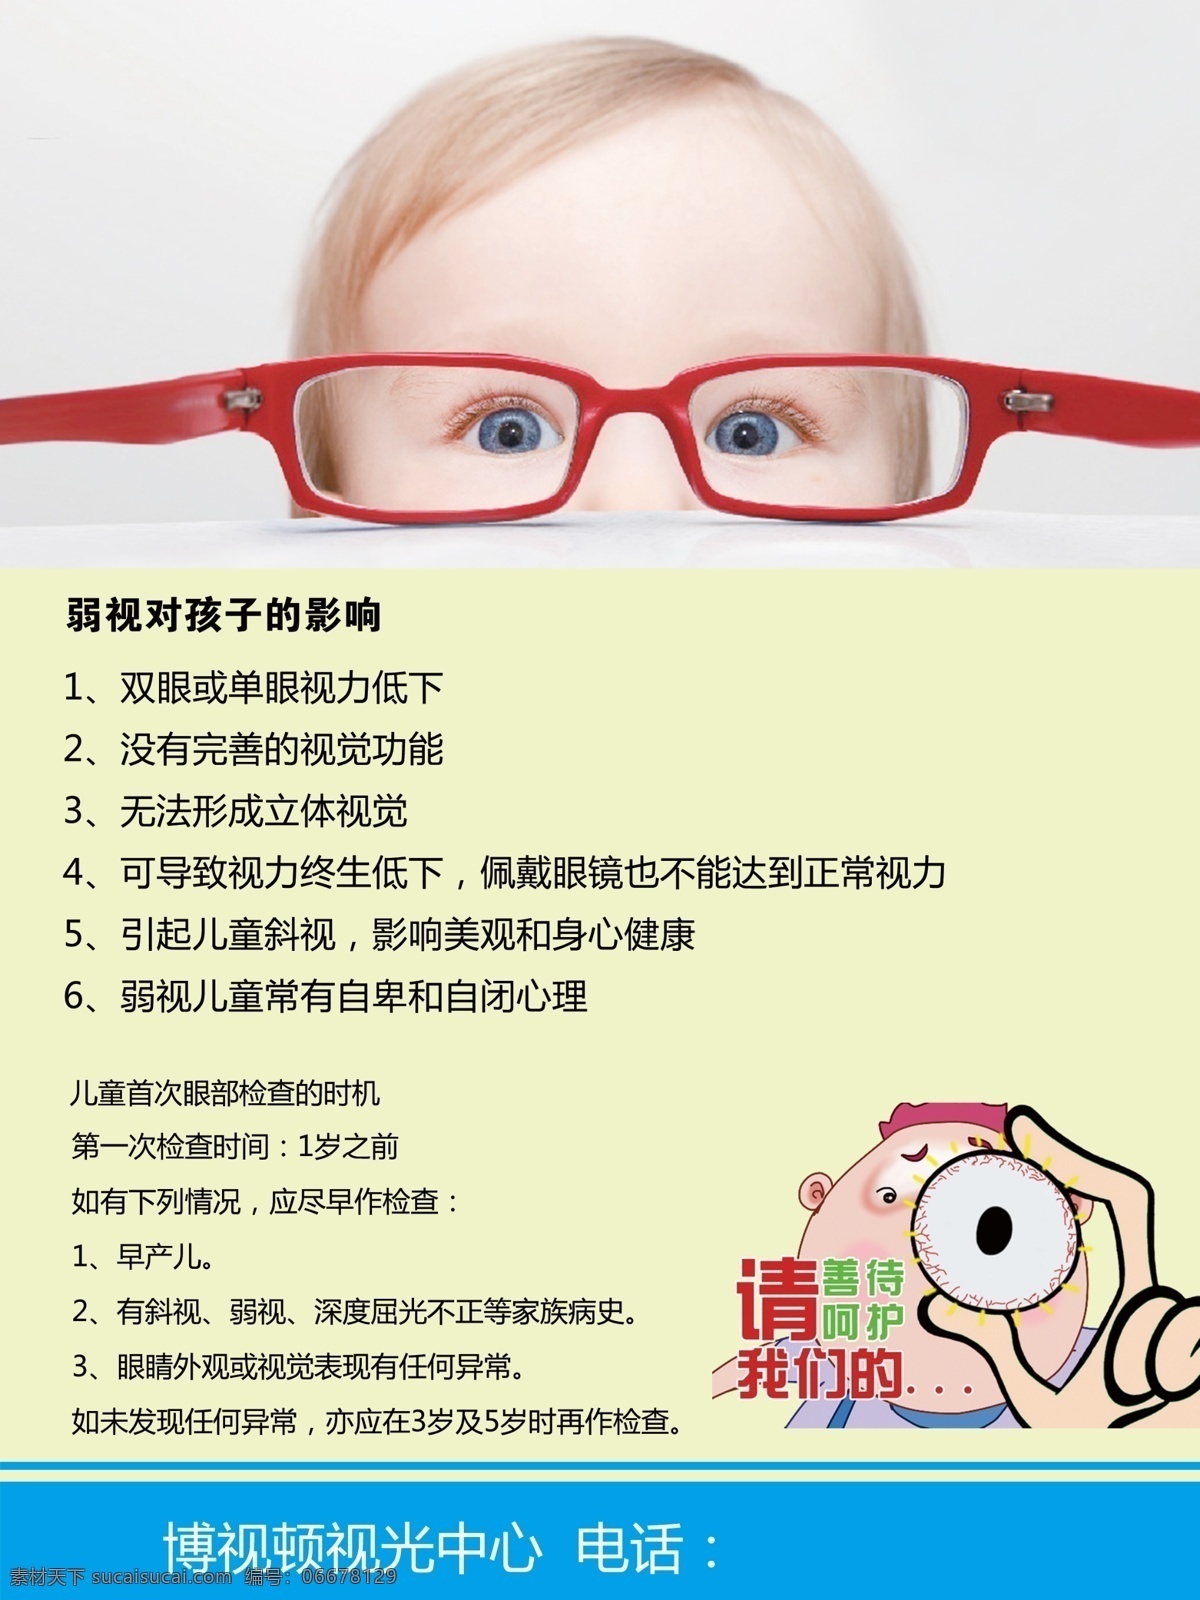 弱视 孩子 影响 弱视影响 近视 眼镜 视力 分层